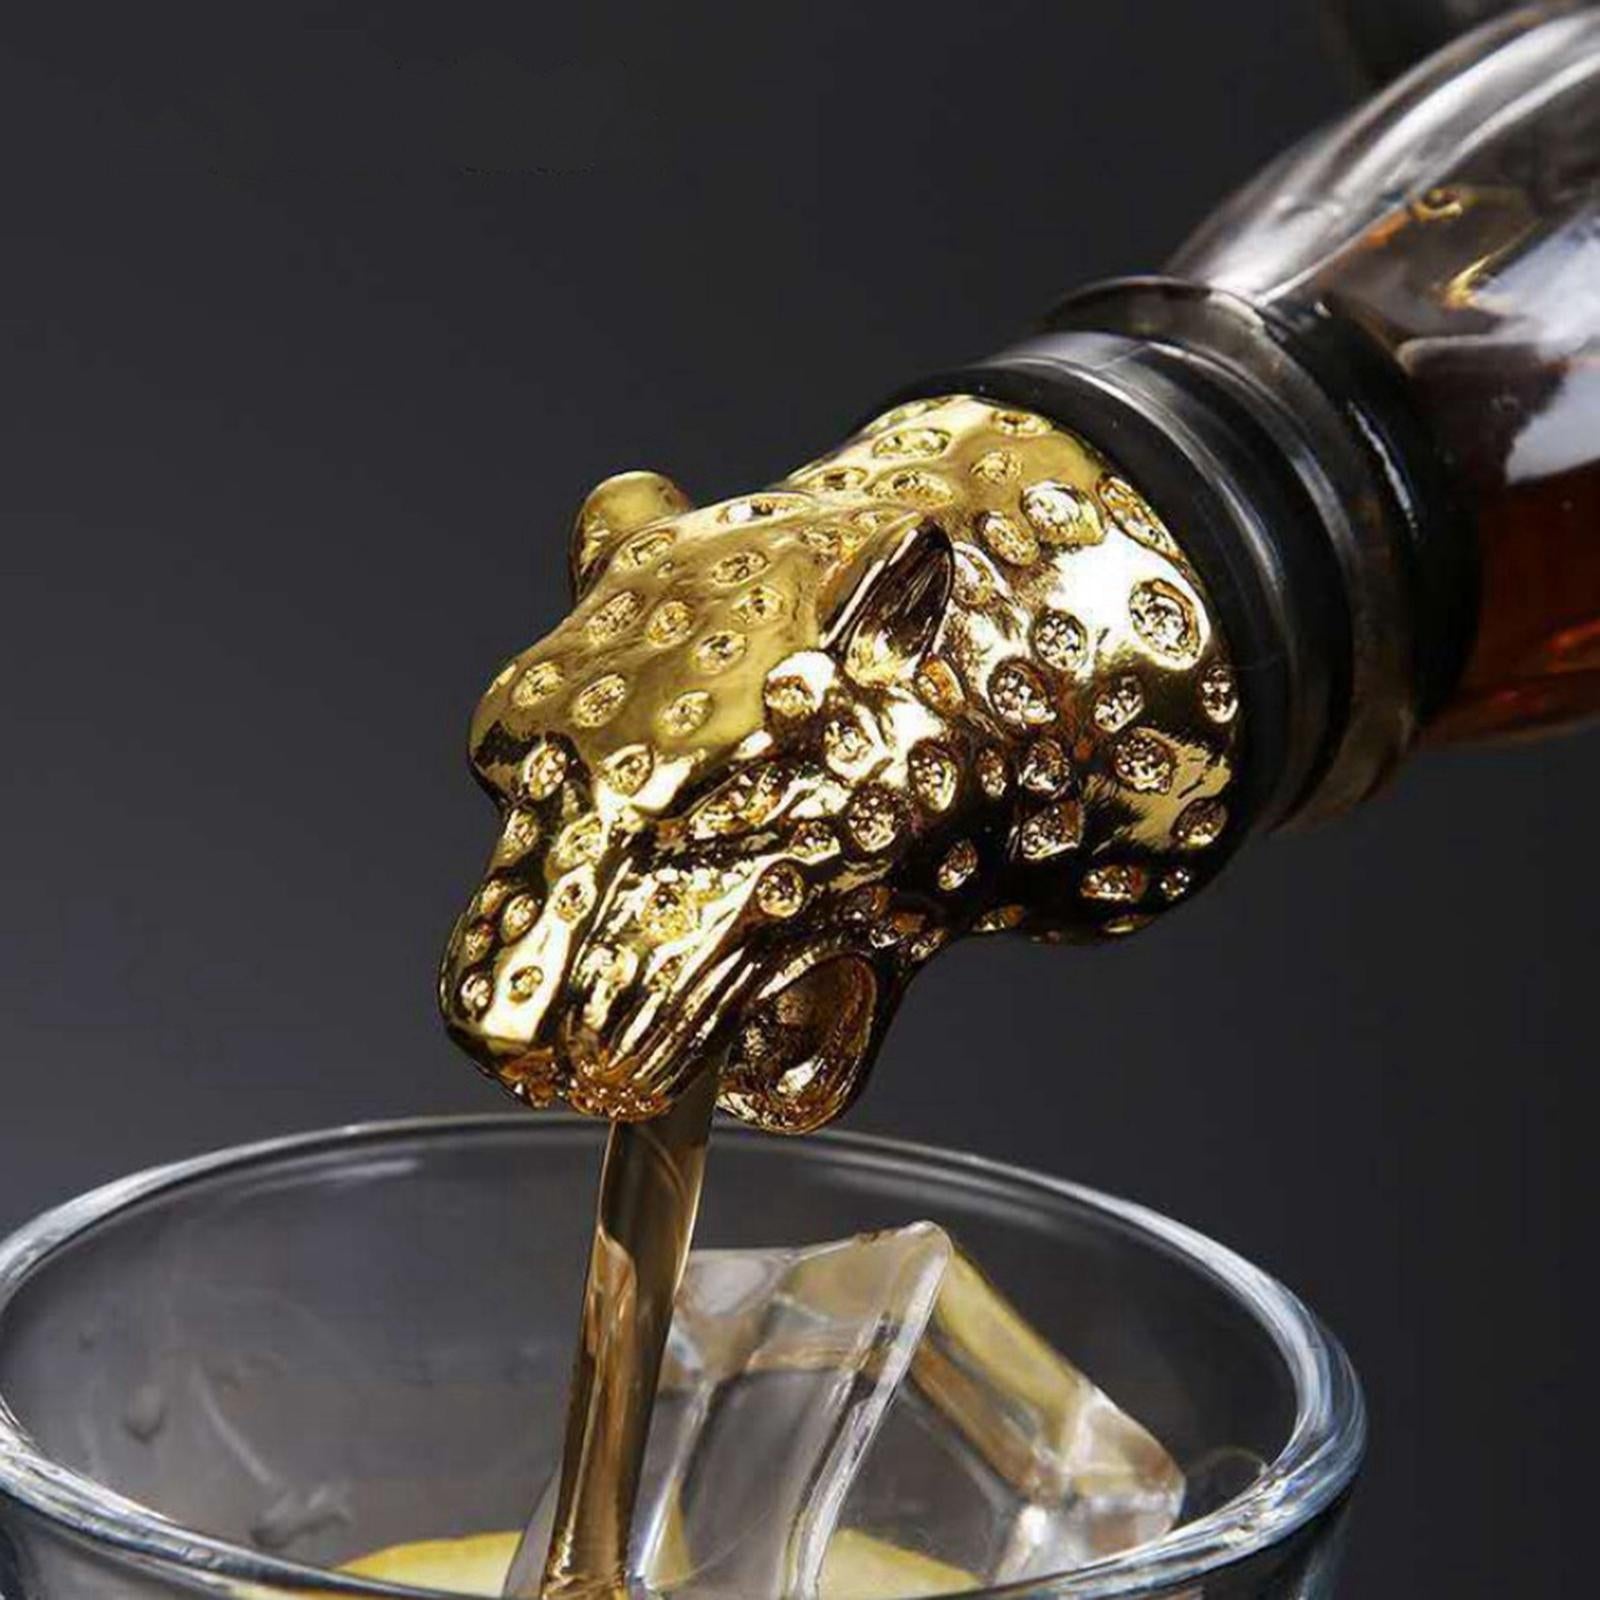 Zinc Alloy Wine Aerators Pourer Wine Stopper Bottle Pourer Home Kitchen Accs leopard